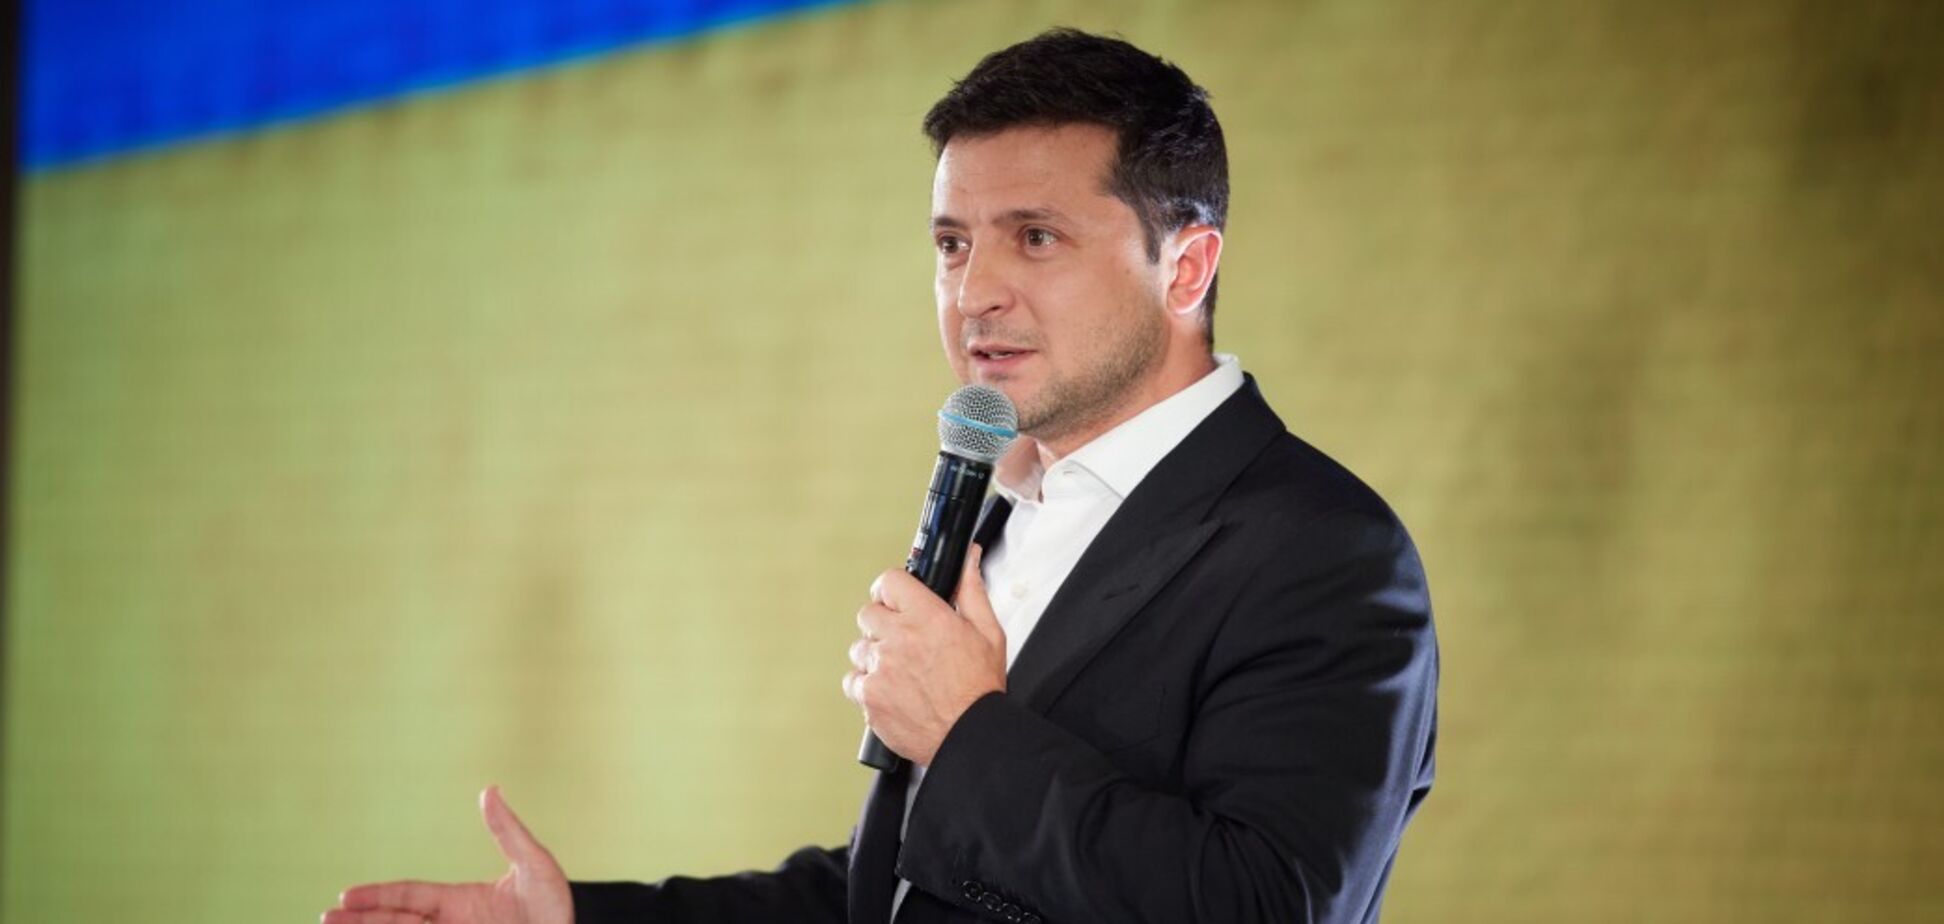 Зеленський розповів про питання до Разумкова і висловився про другий президентський термін. Відео